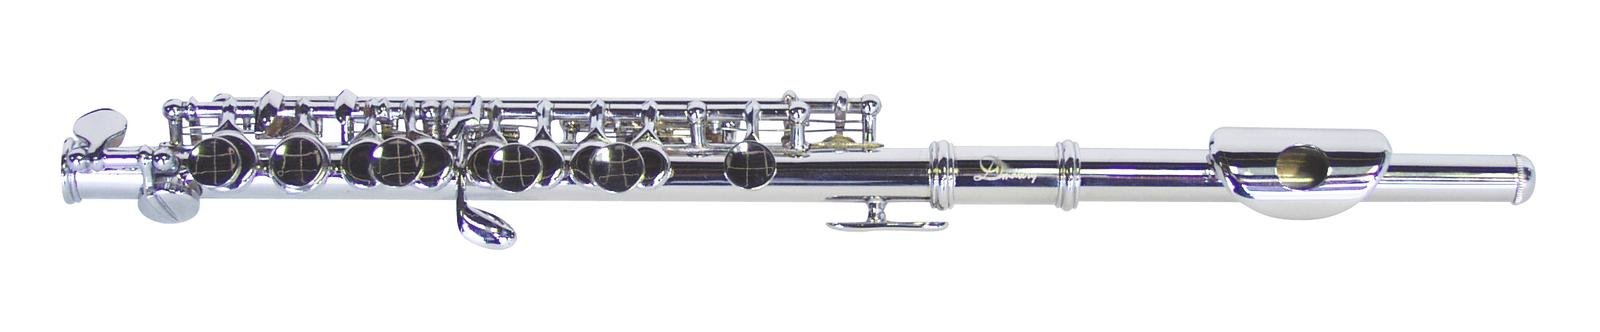 Ottavino flauto piccolo silver DIMAVERY PC-10 C